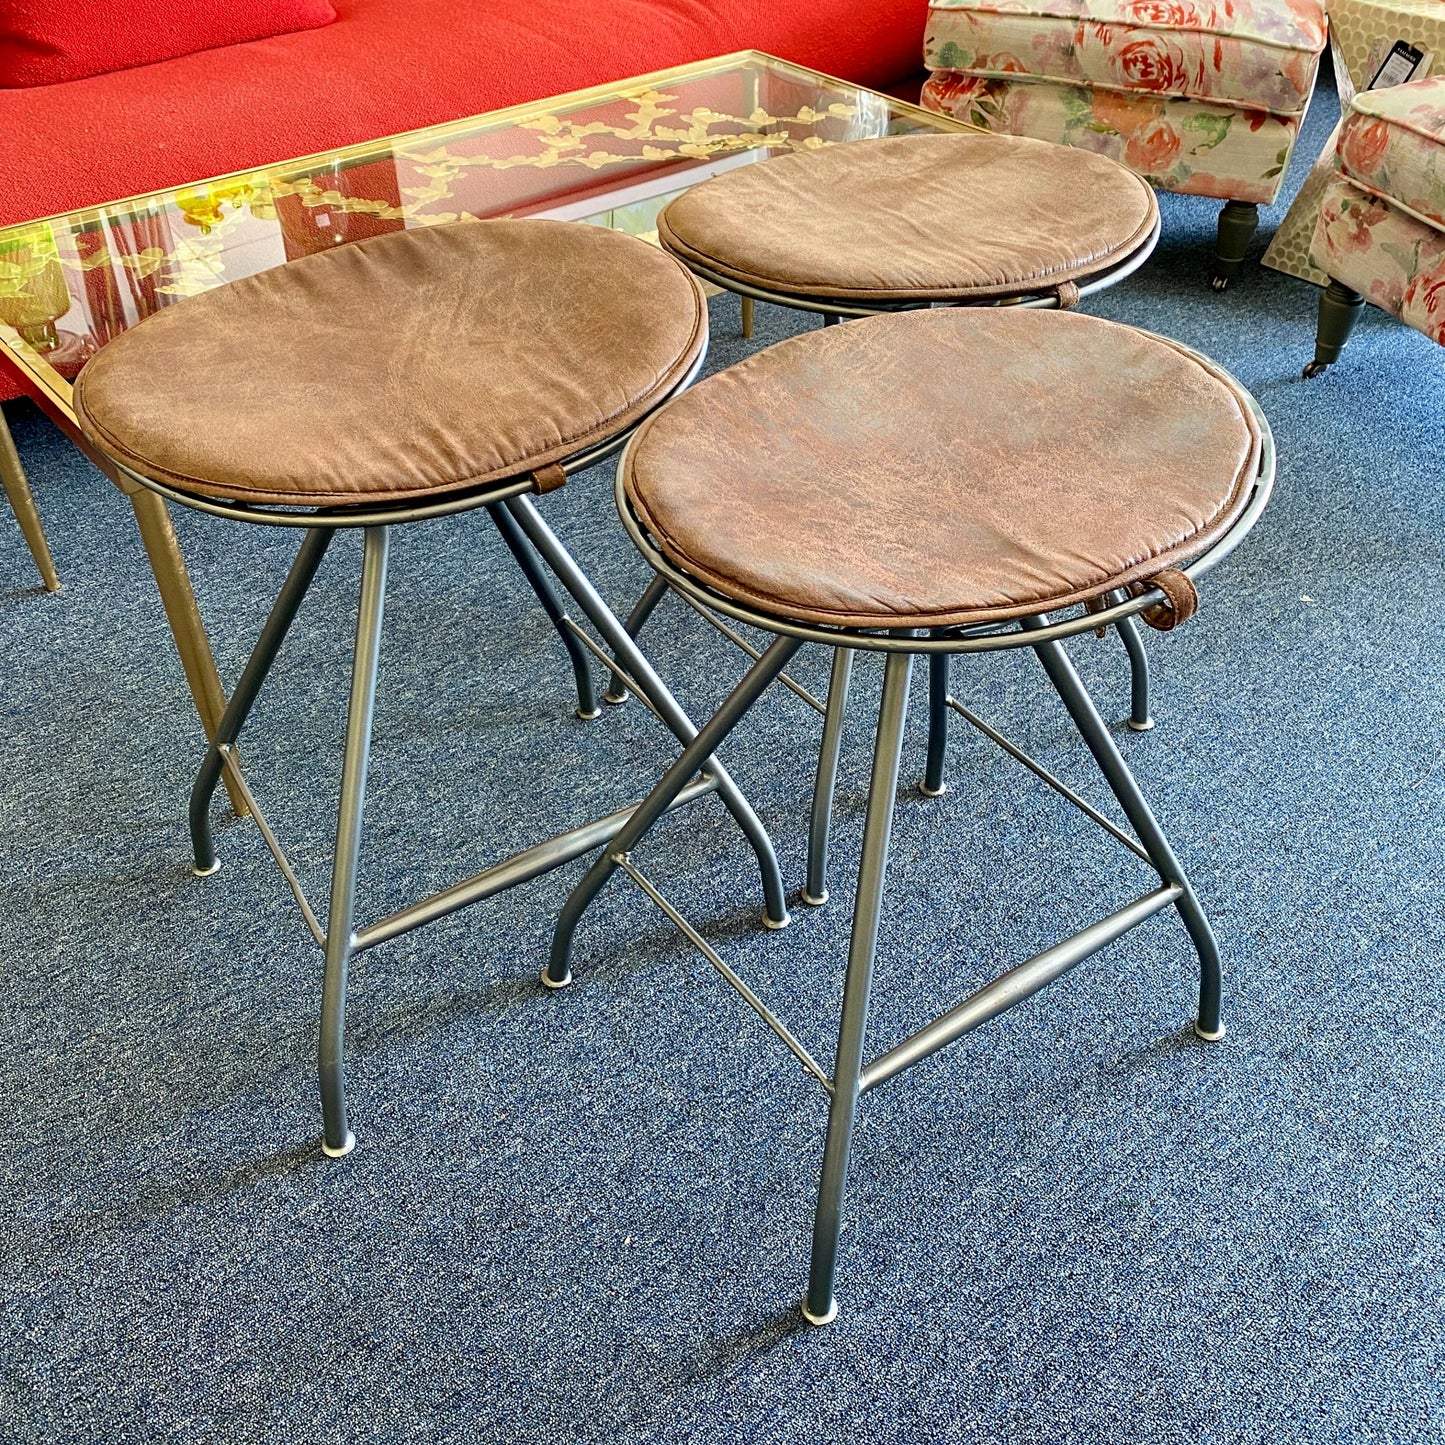 Set of 3 Metal Barstools